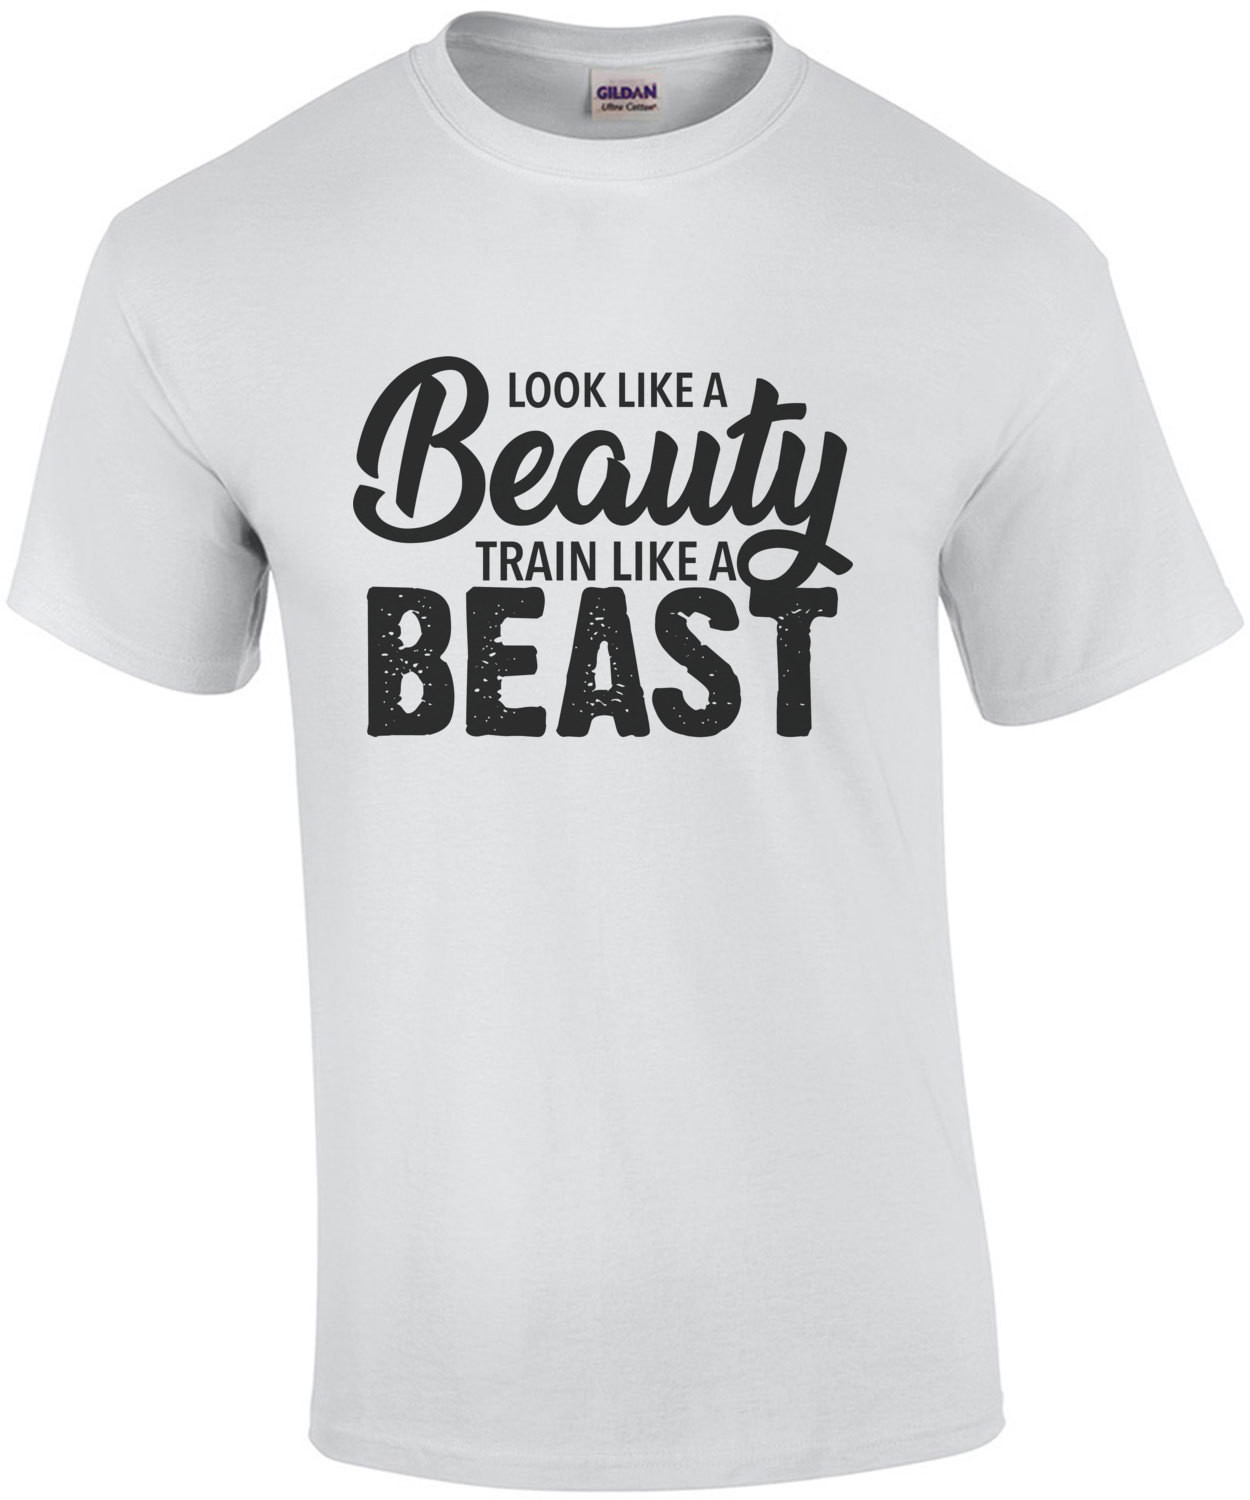 Look like a beauty train like a beast - work out t-shirt